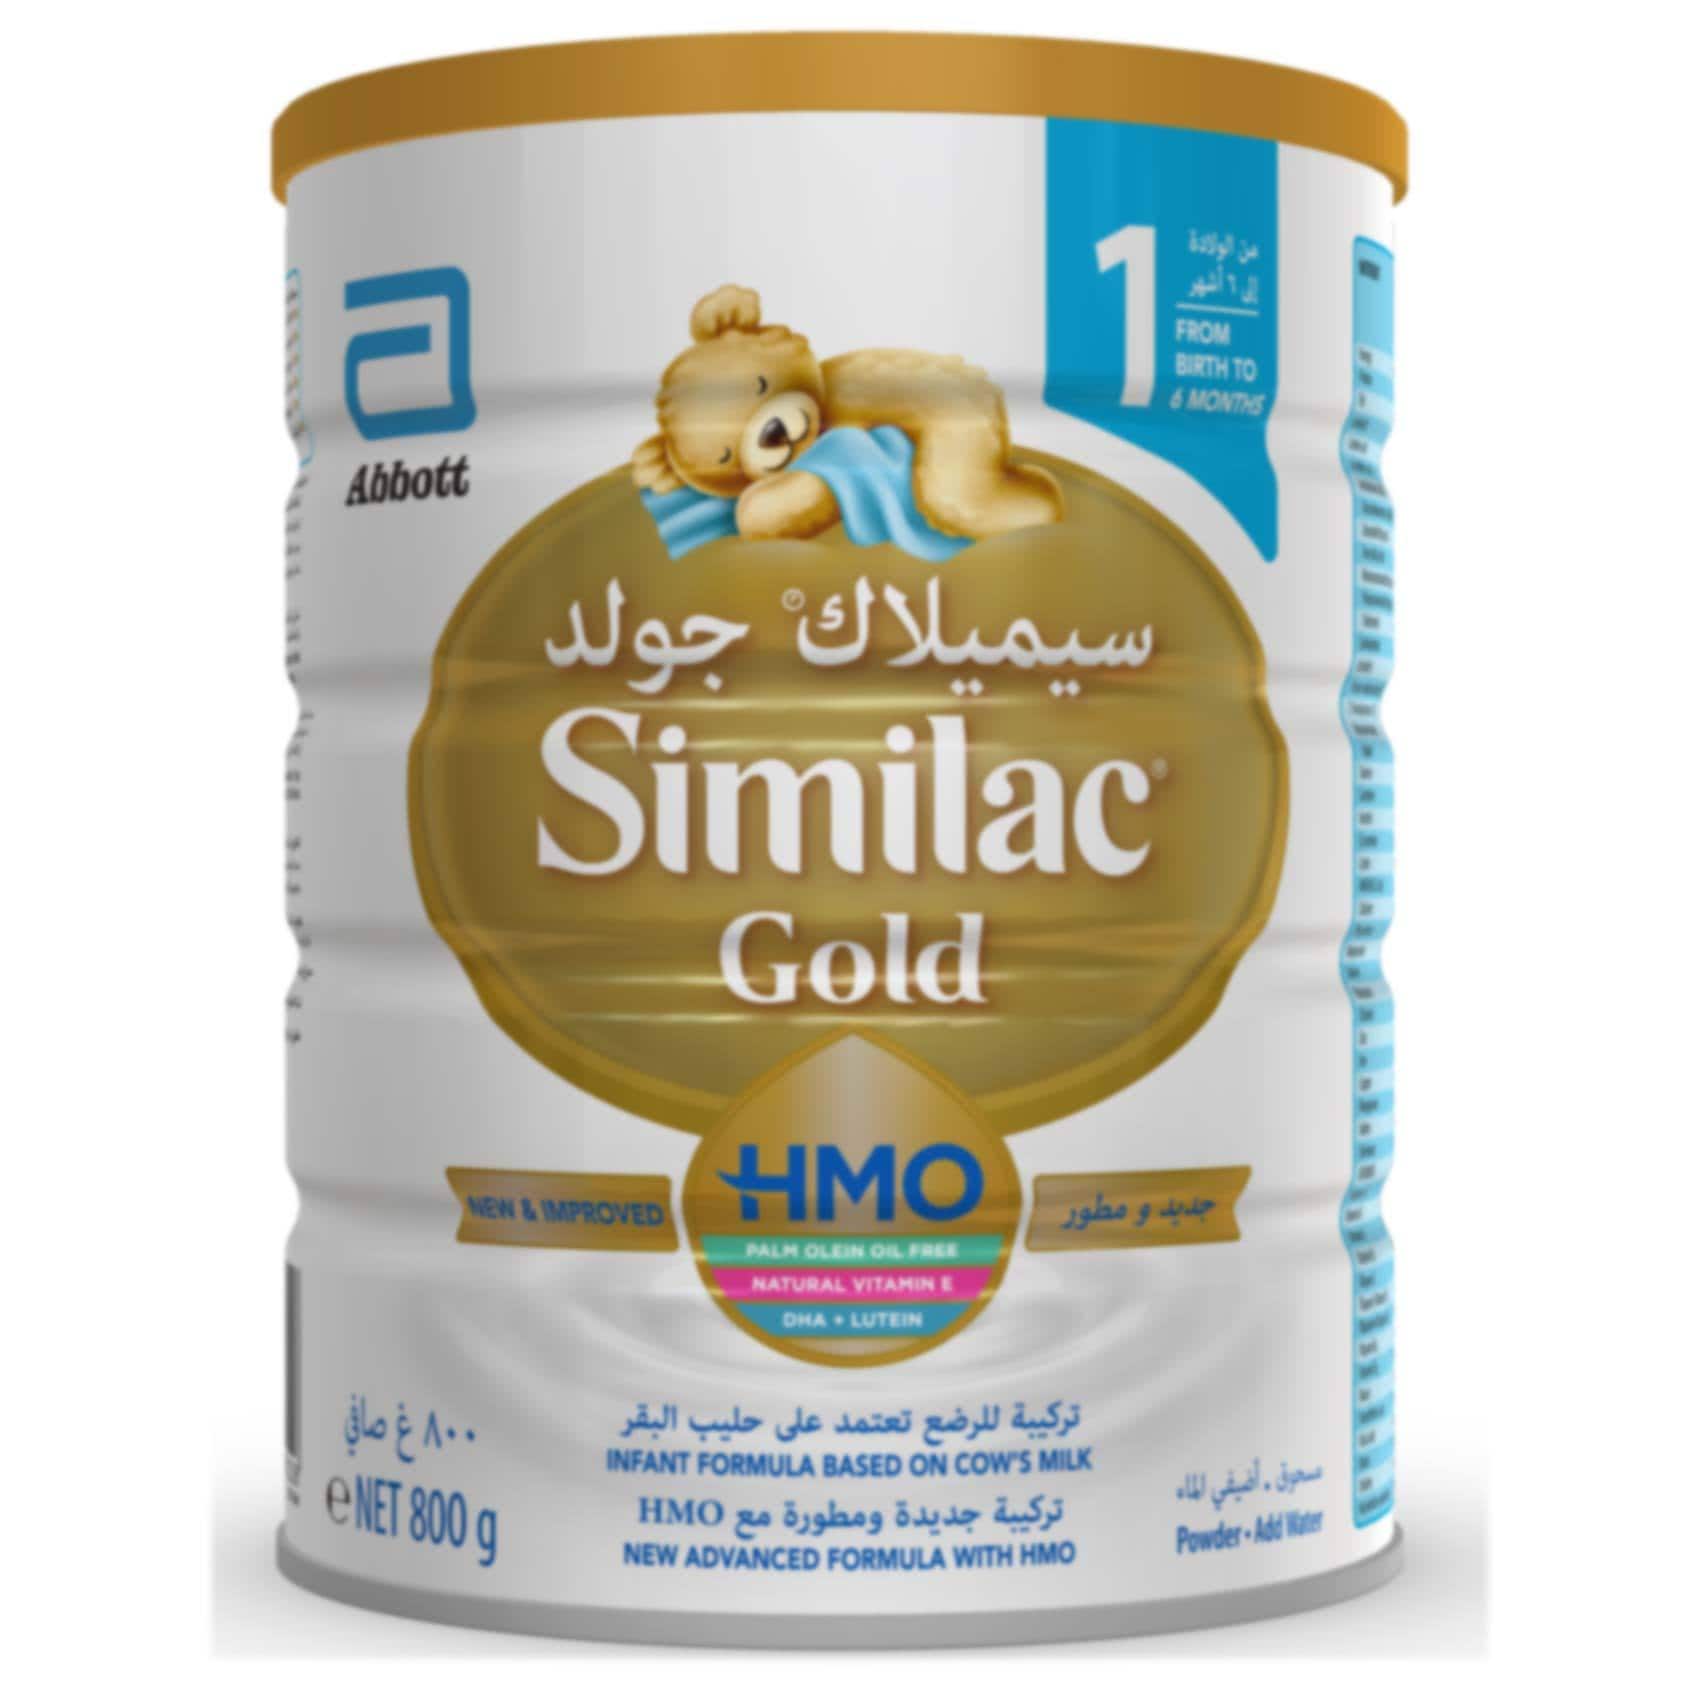 Buy Similac Gold 1 HMO Infant Formula 